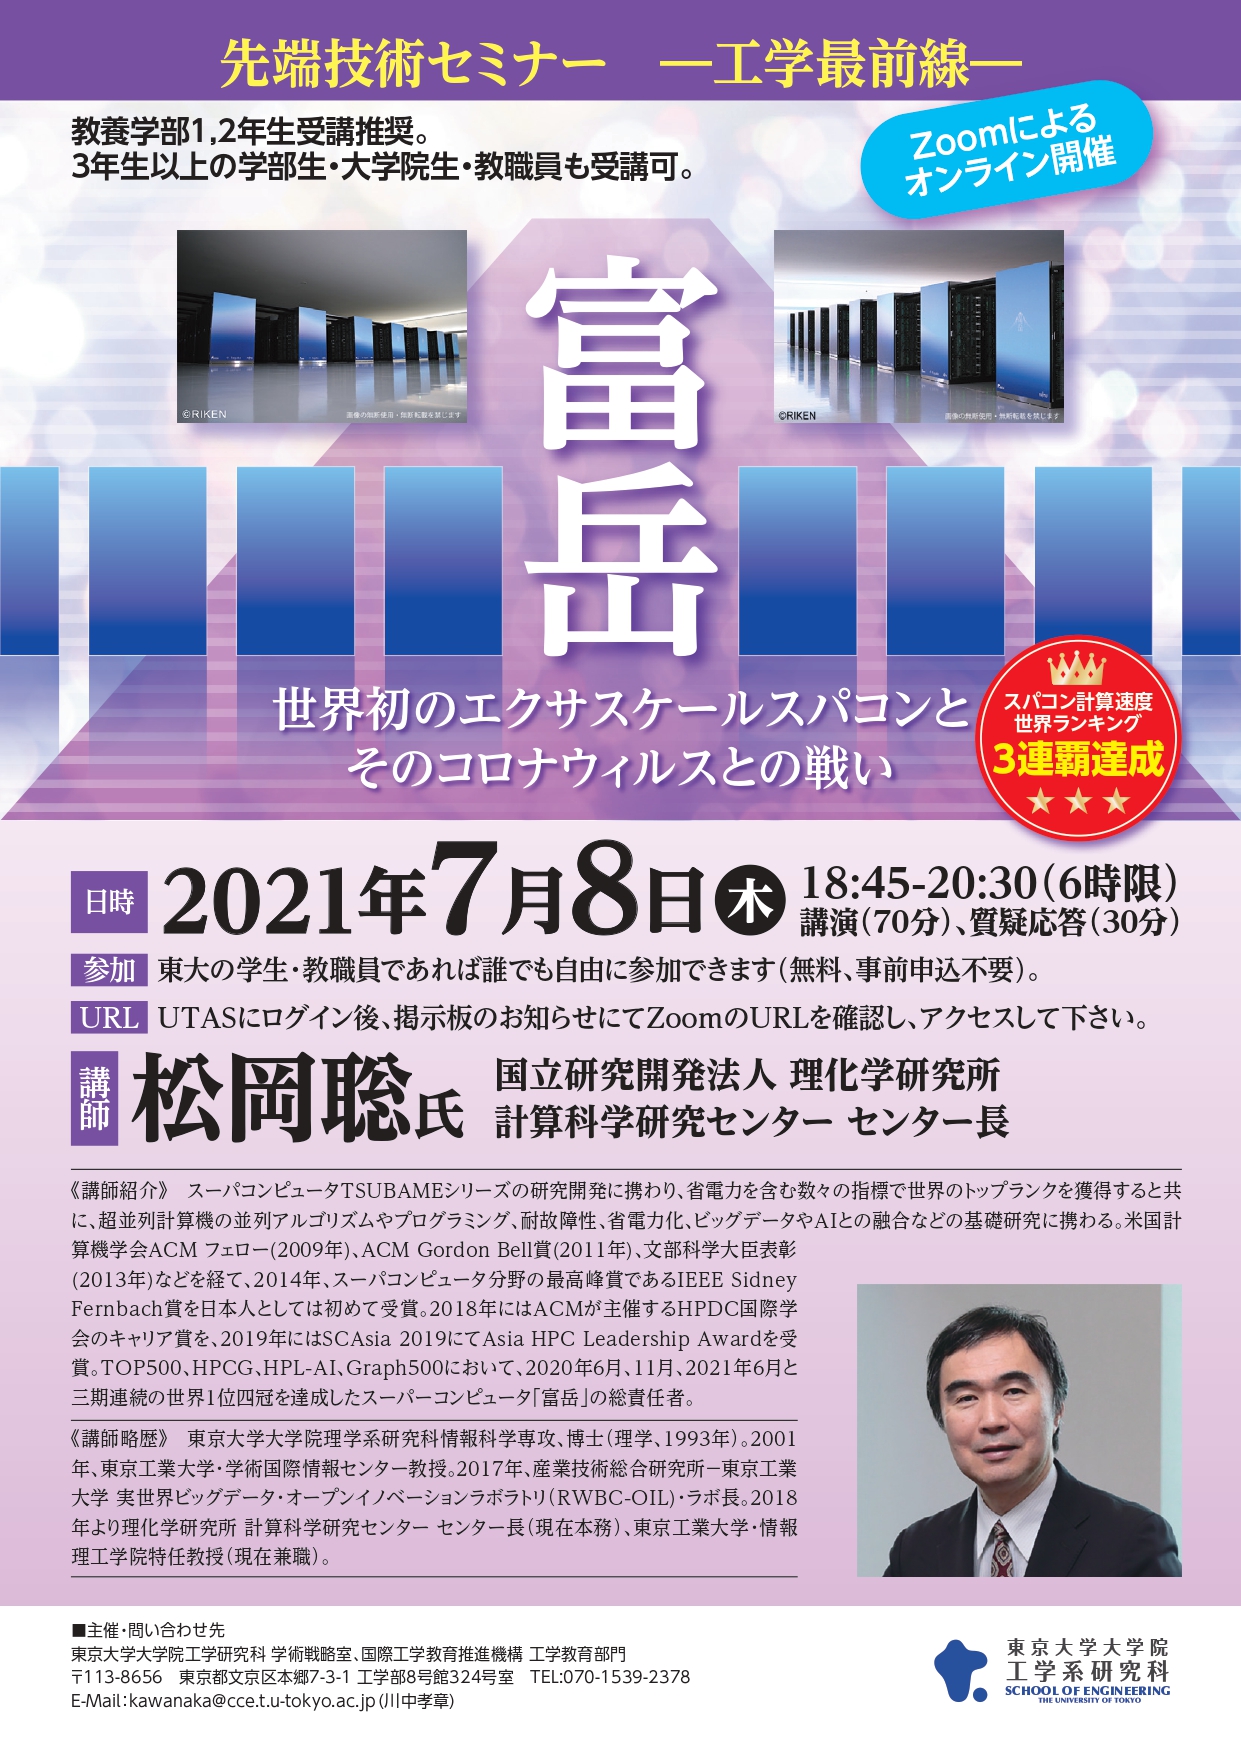 先端技術セミナーポスター_松岡聡-2021S1S2